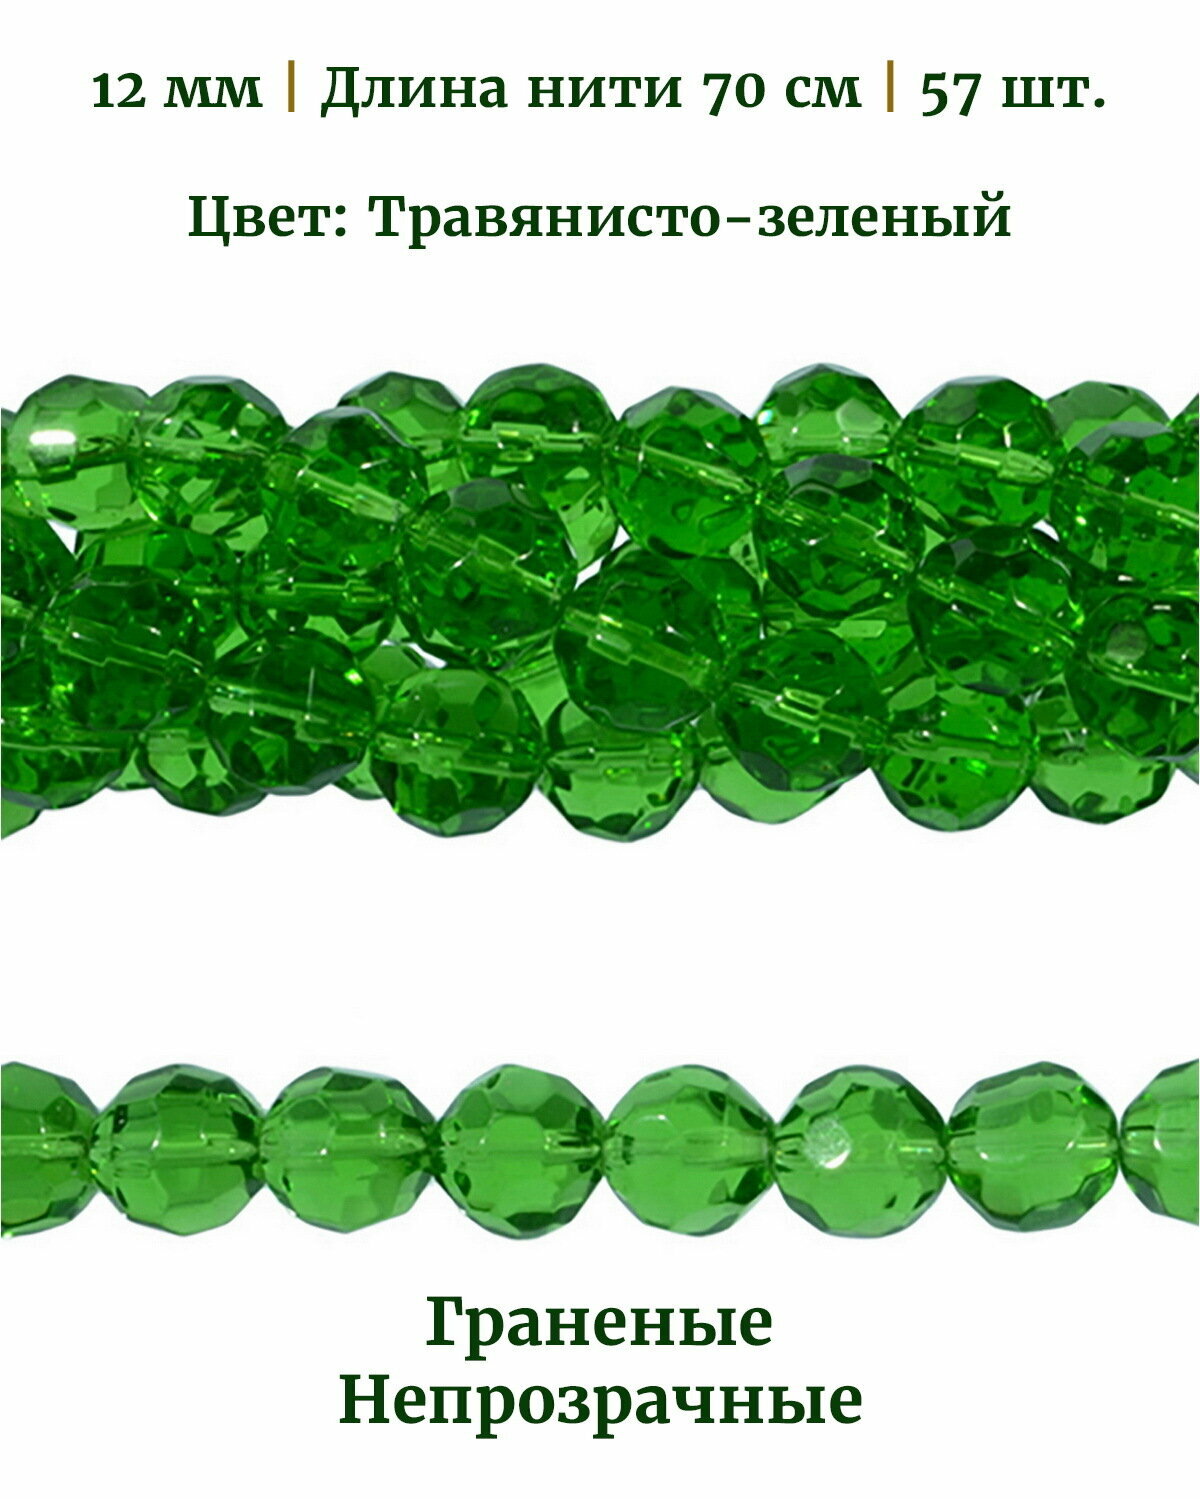 Бусины стеклянные граненые непрозрачные, диаметр бусин 12 мм, цвет травянисто-зеленый, длина нити 70 см, 56 шт.